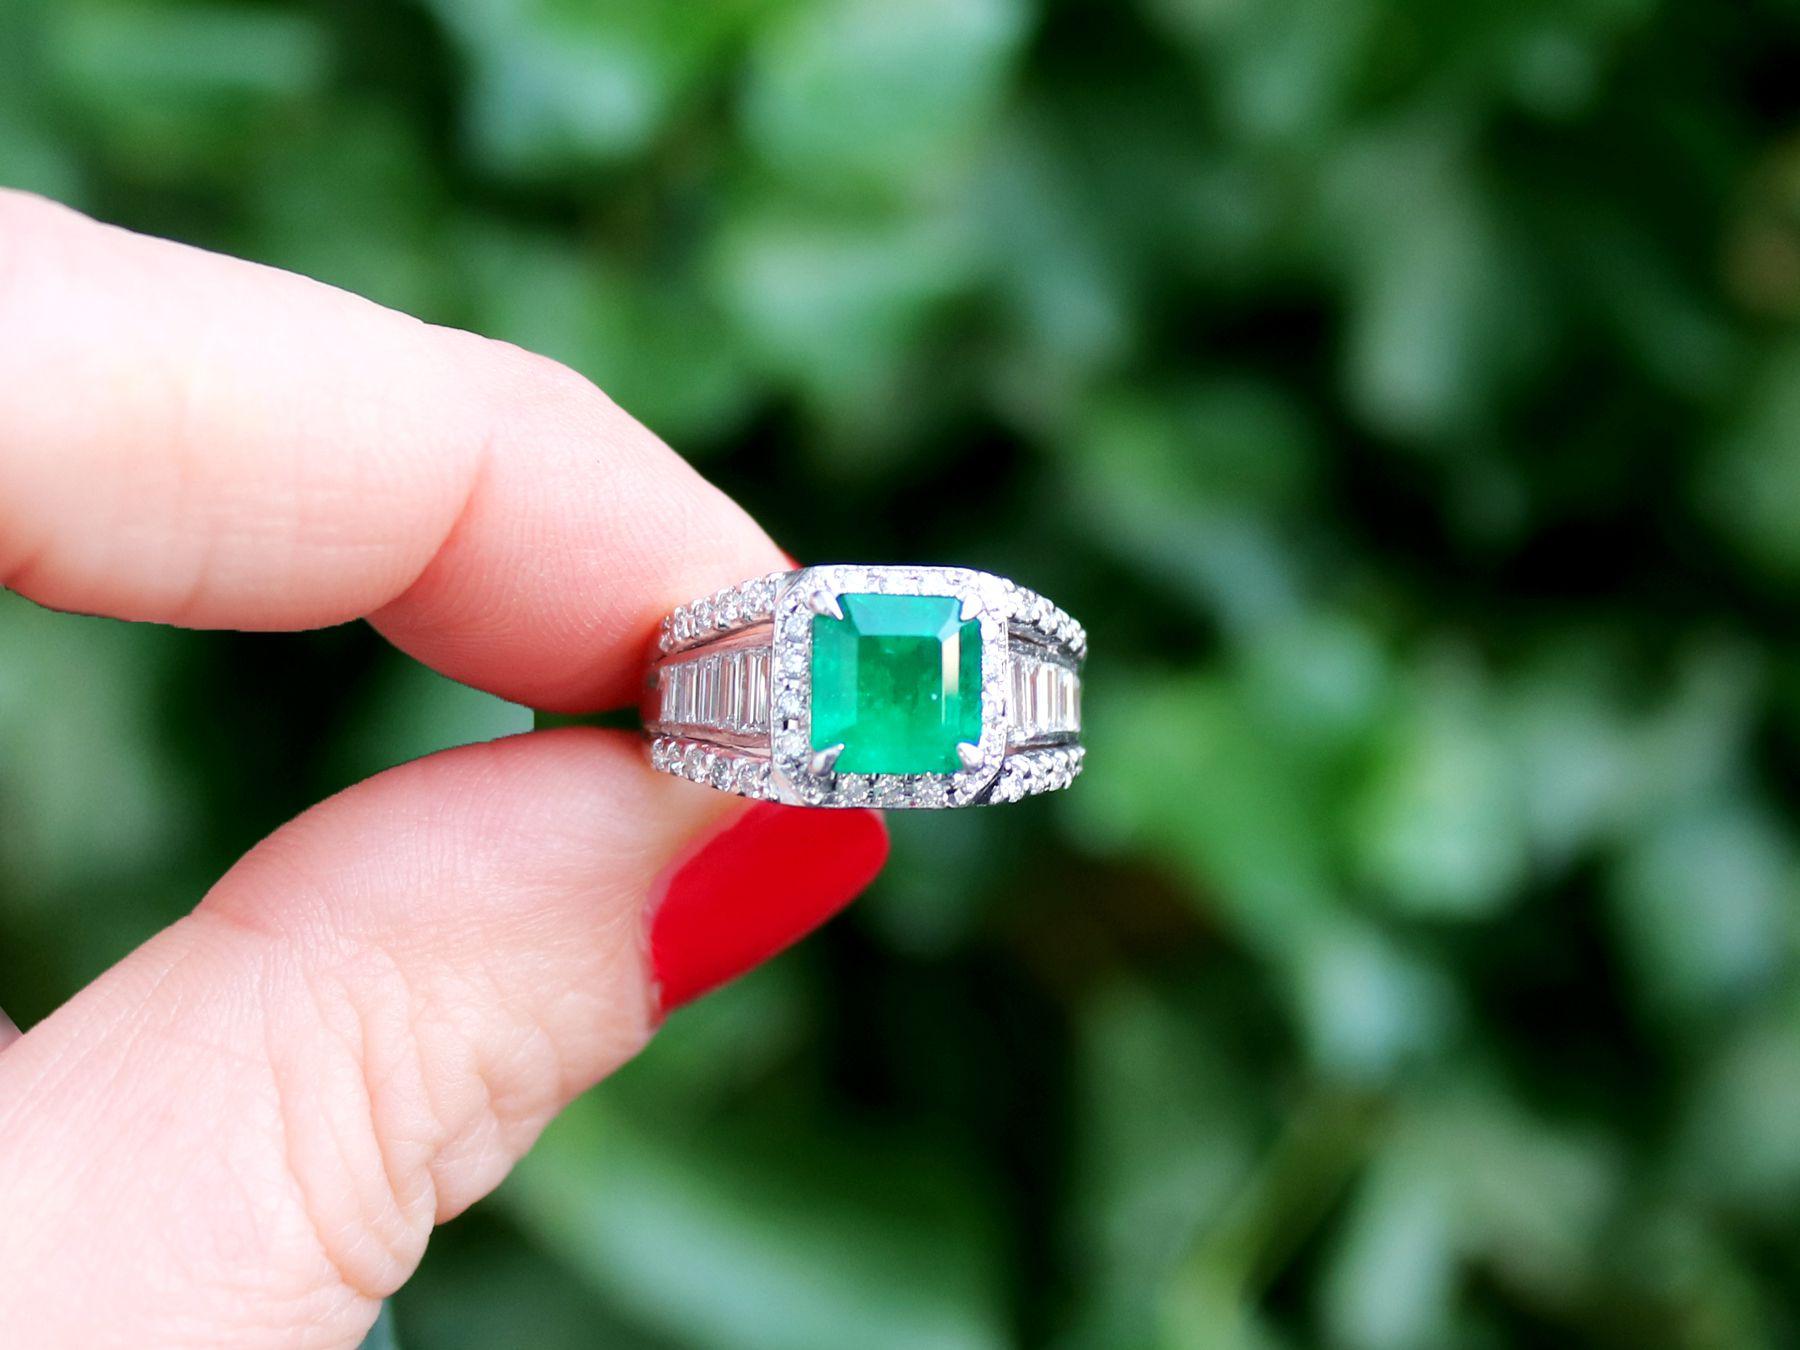 Ein feiner und beeindruckender zeitgenössischer Ring aus Platin mit einem natürlichen Smaragd von 1,93 Karat und einem Diamanten von 0,92 Karat, der Teil unserer Kollektionen für zeitgenössischen Schmuck und Nachlassschmuck ist.

Dieser große,